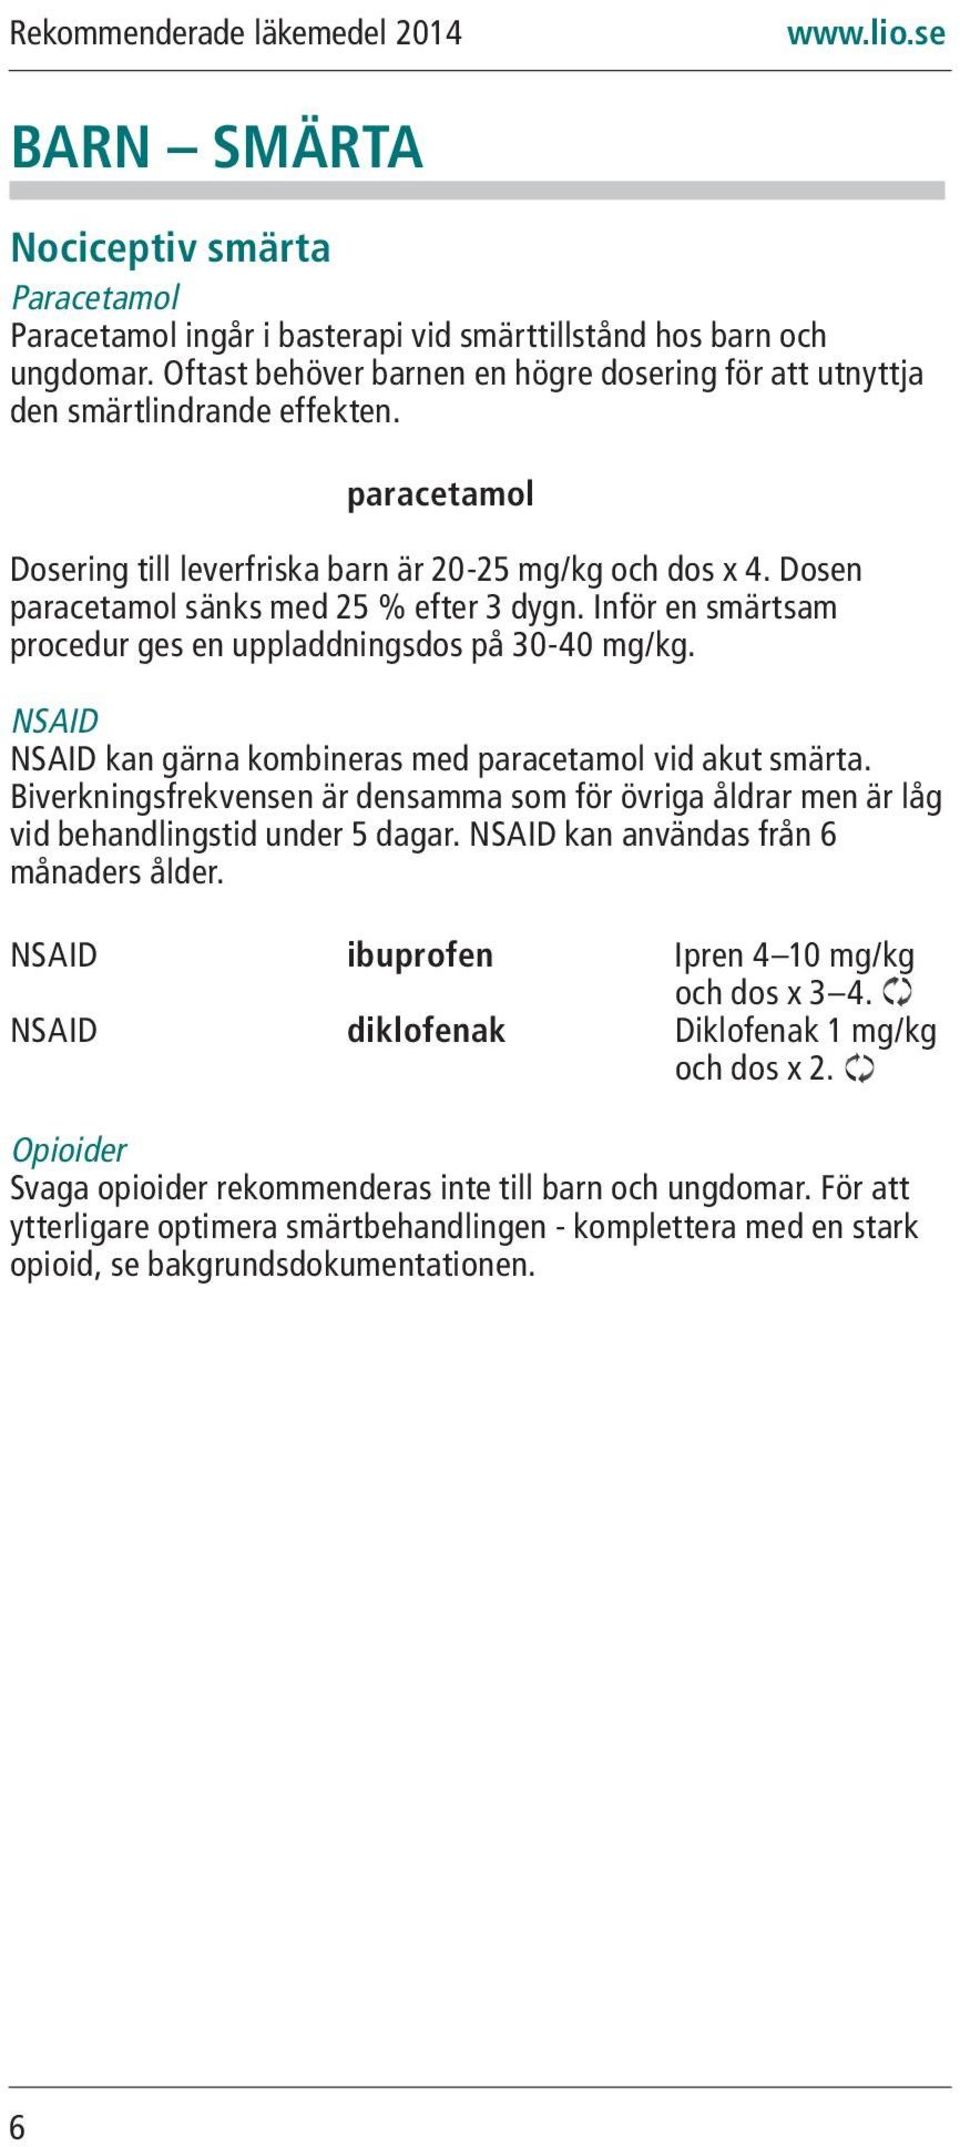 NSAID NSAID kan gärna kombineras med paracetamol vid akut smärta. Biverkningsfrekvensen är densamma som för övriga åldrar men är låg vid behandlingstid under 5 dagar.